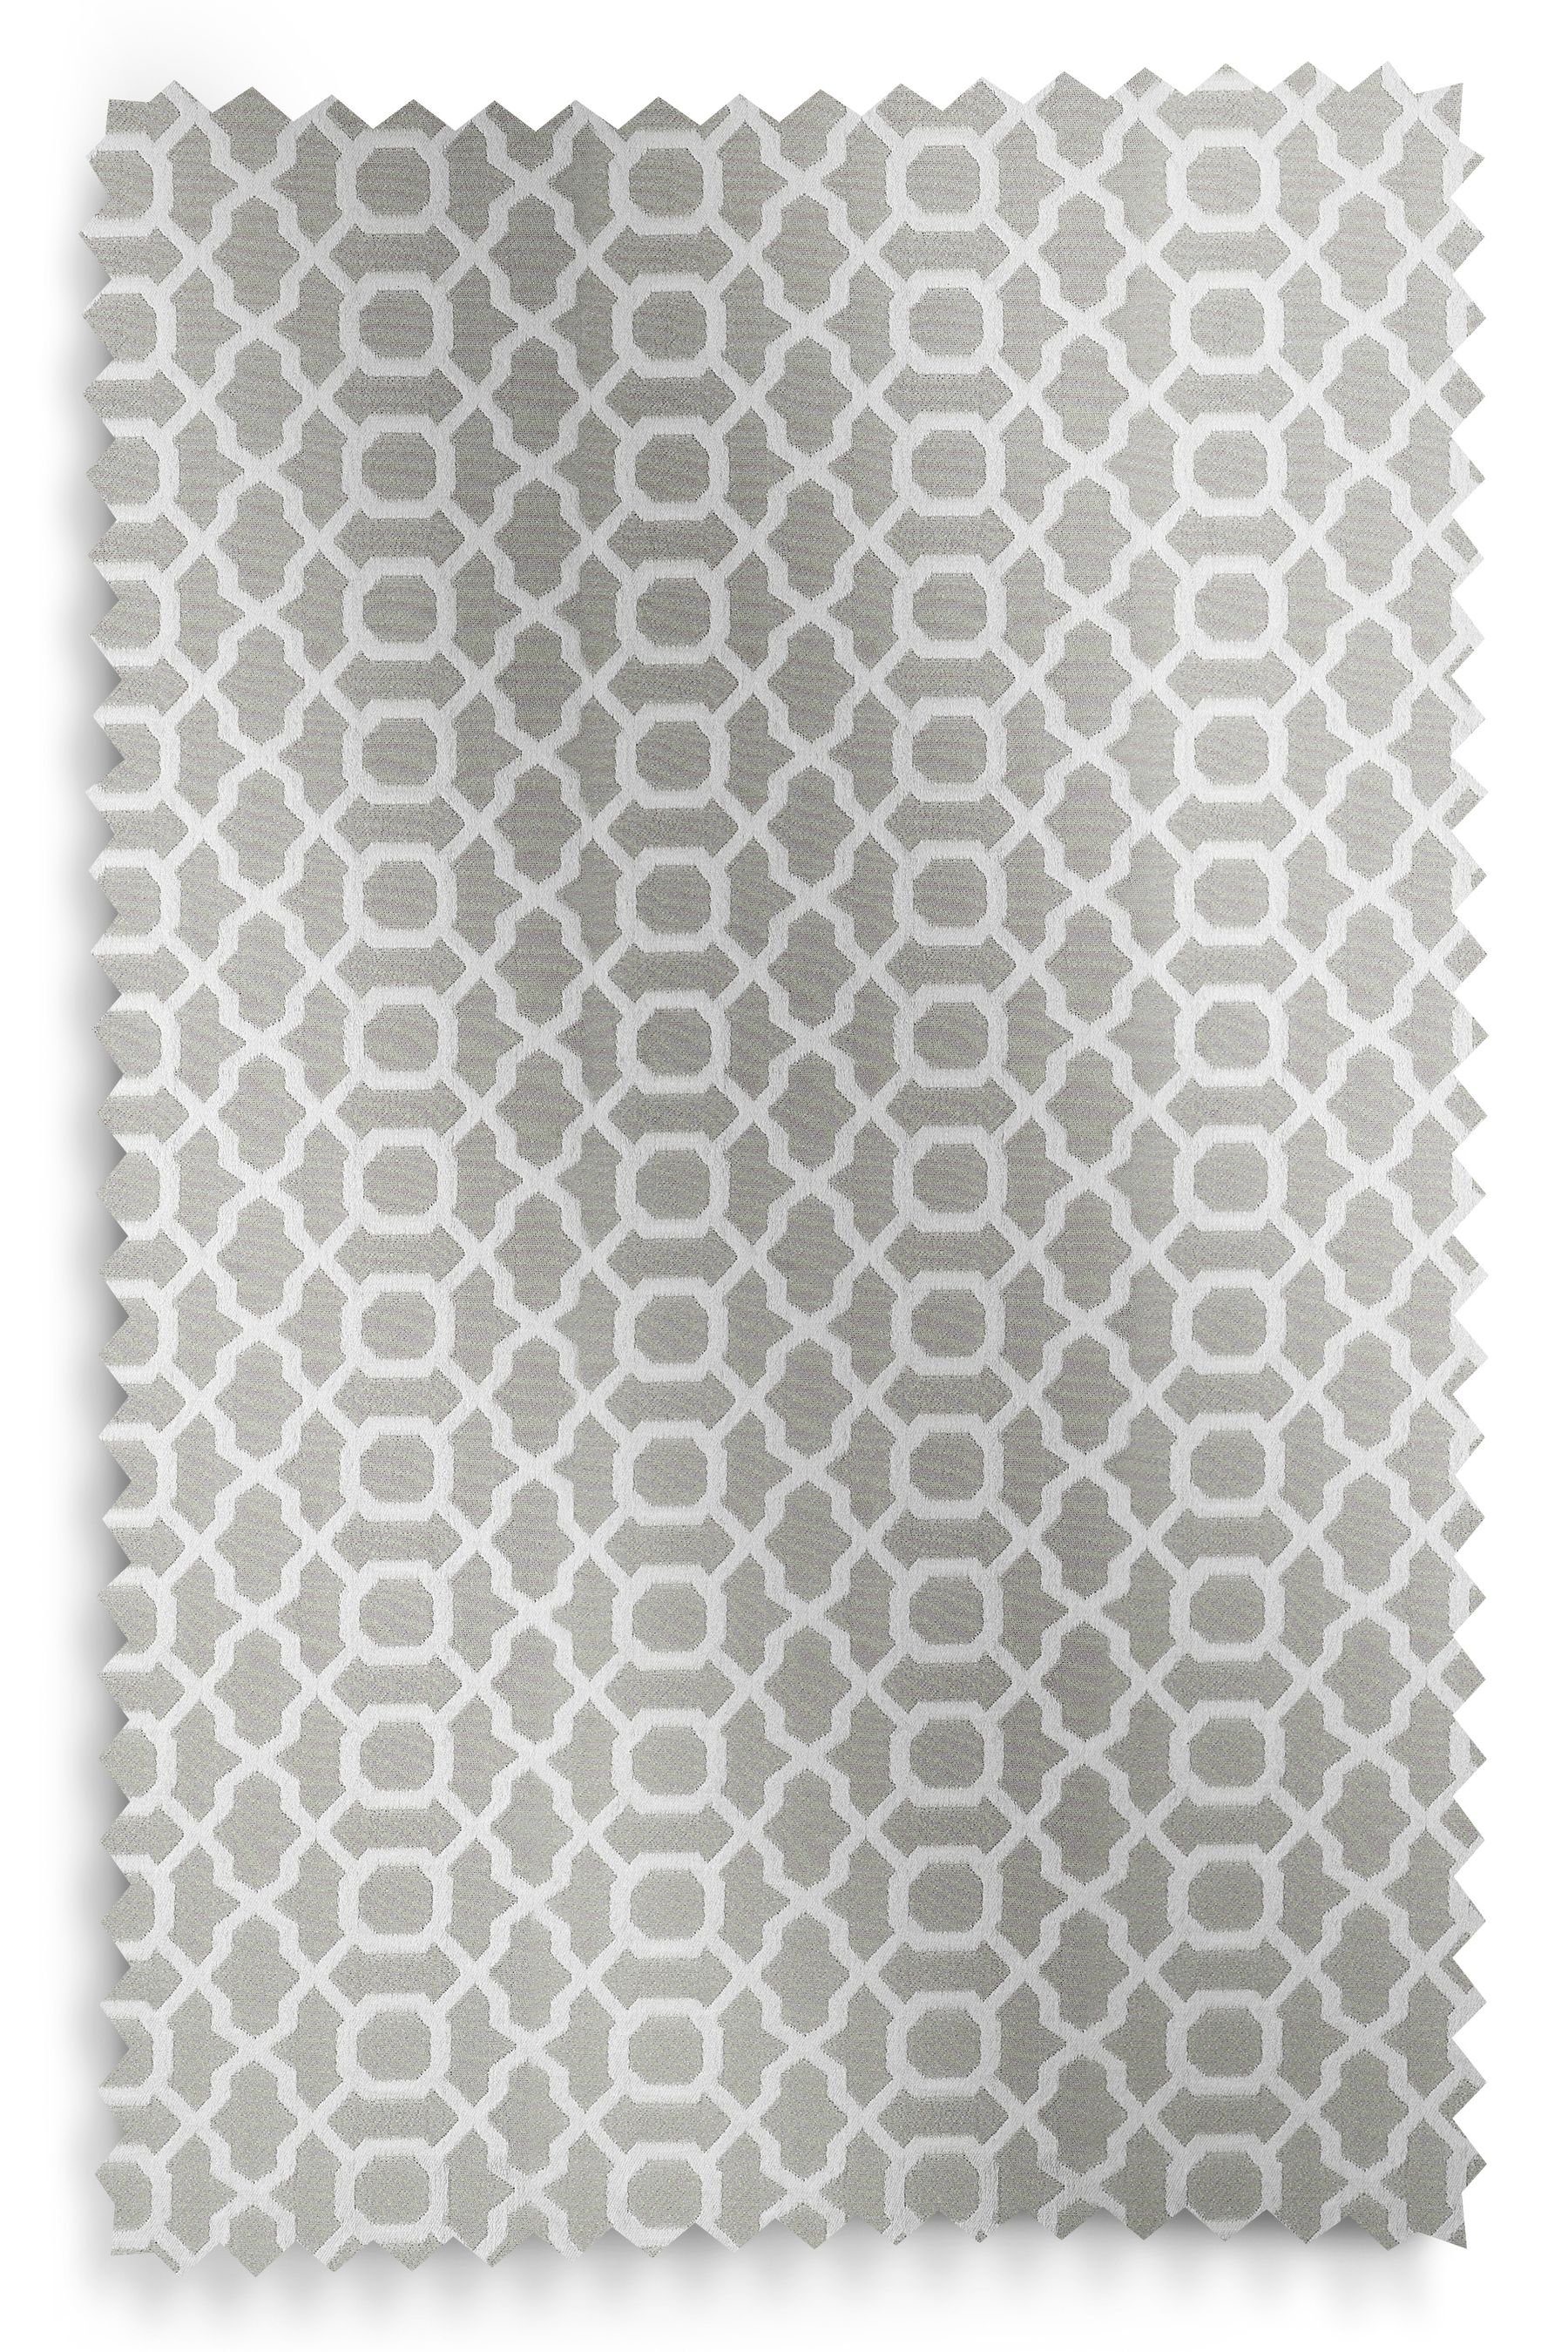 Gewebte Light Next, Muster, mit Silver Grey Vorhänge (2 Vorhang geometrischem St)